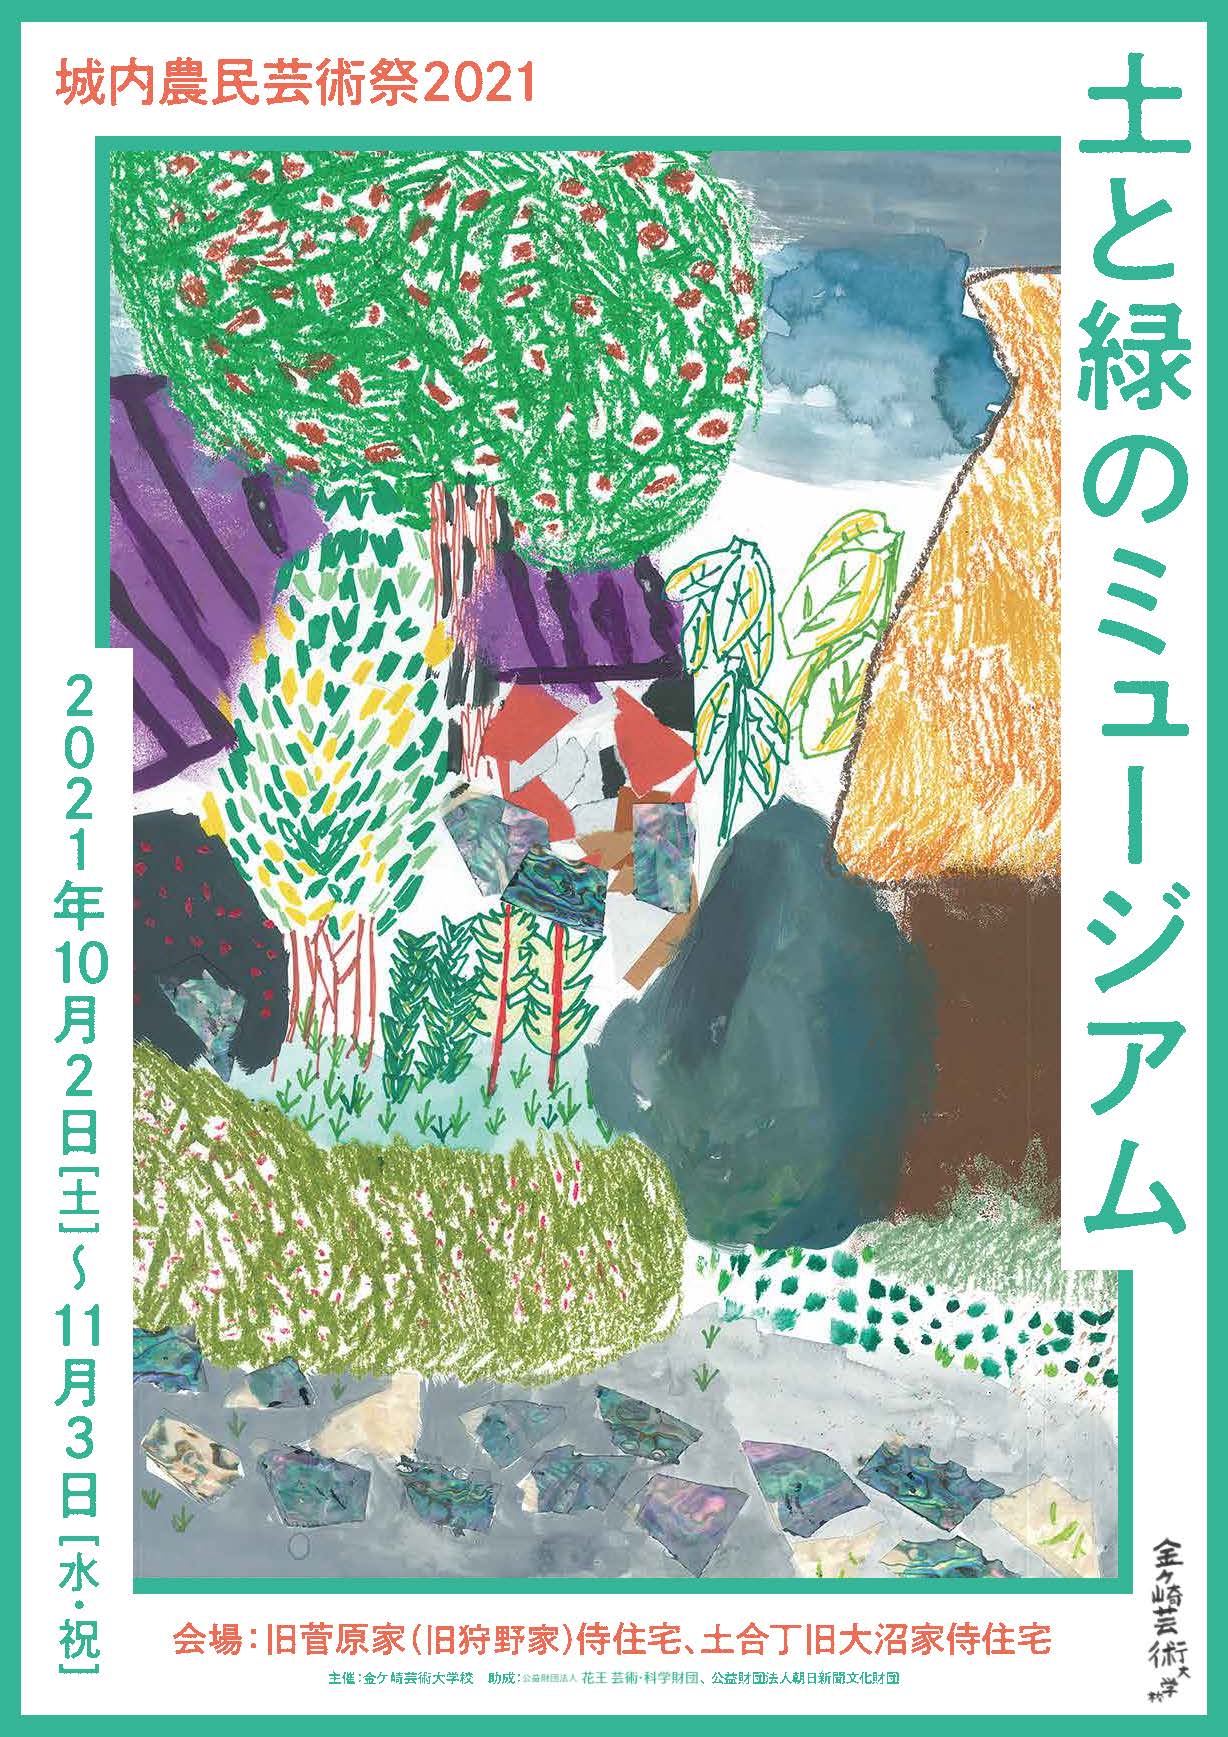 村山修二郎准教授が「城内農民芸術祭2021　土と緑のミュージアム」に参加します（10/2～11/3）